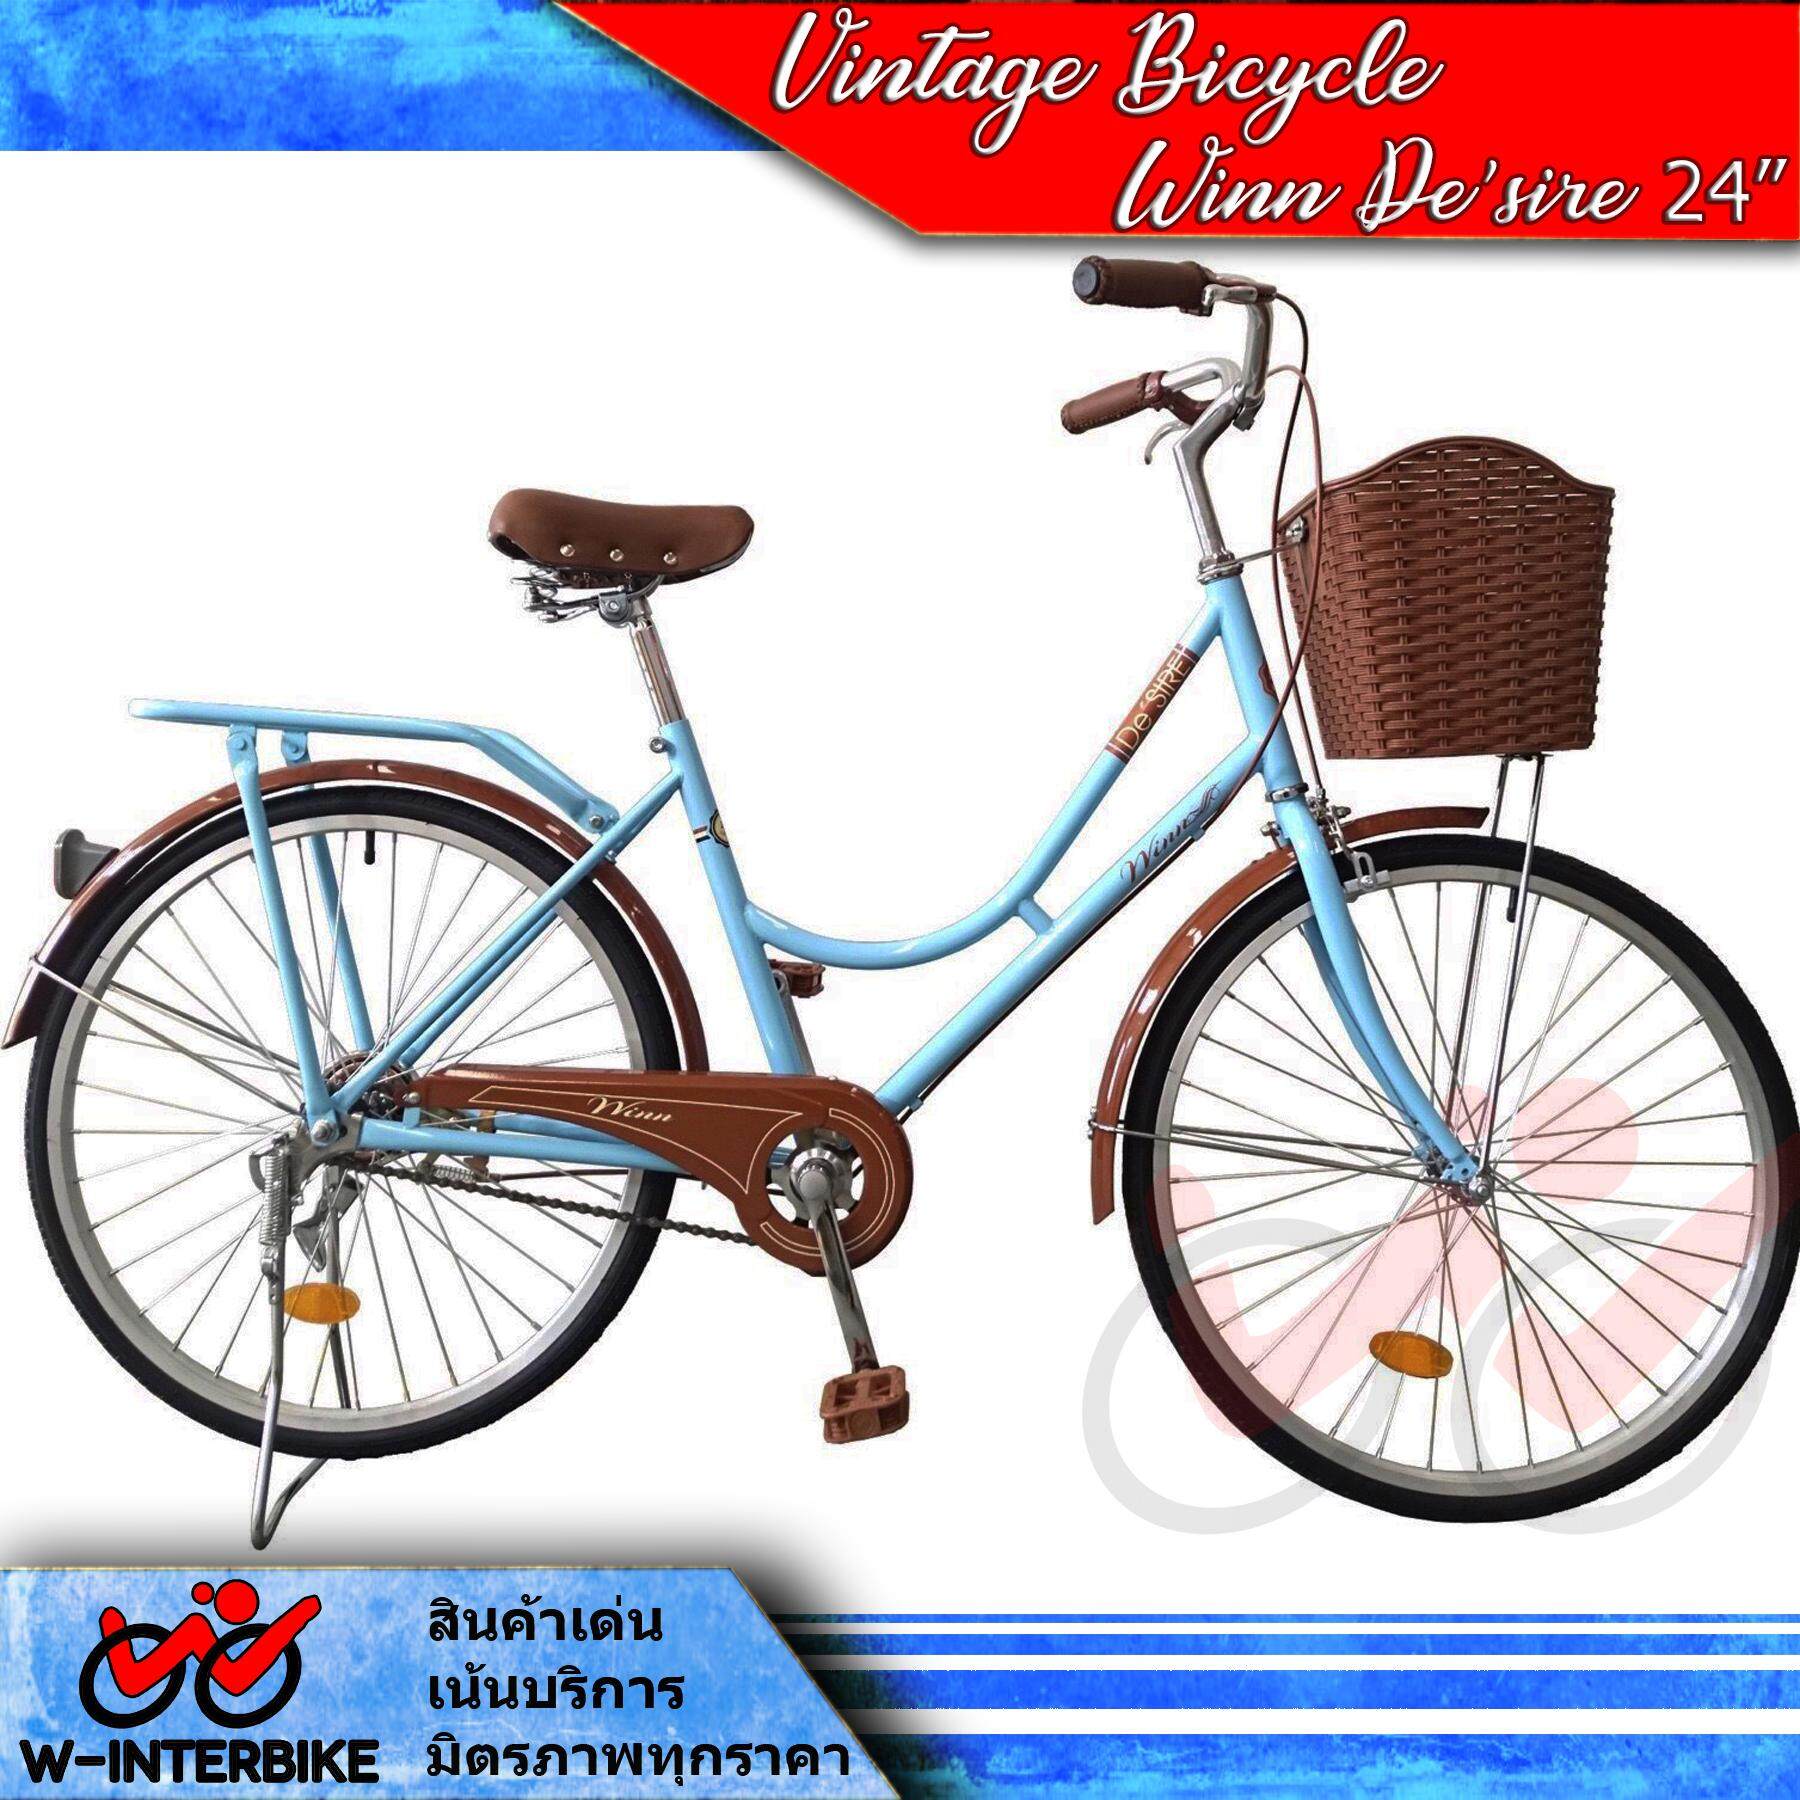 ส่งฟรี !! WINN De'sire จักรยานแม่บ้านวินเทจ ล้อ24 (สีฟ้า)